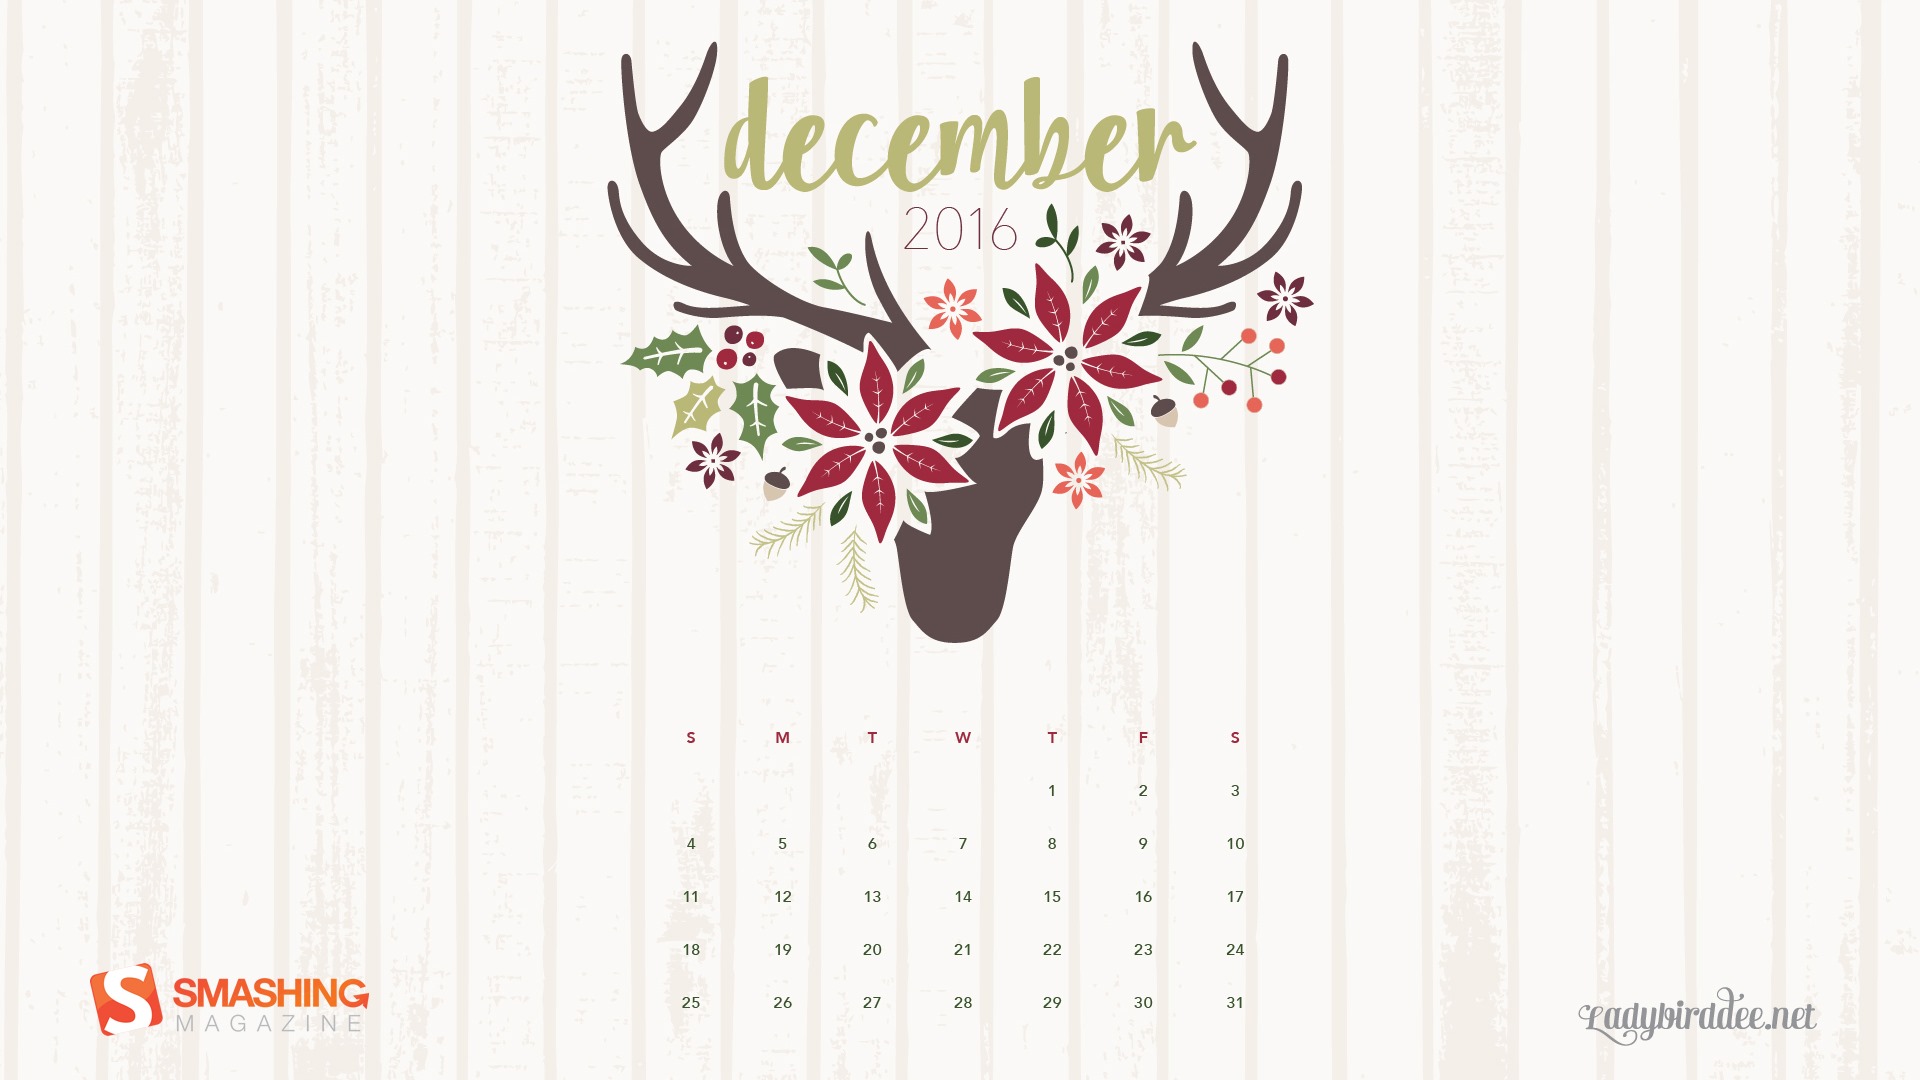 December 2016 Christmas theme calendar wallpaper (1) #28 - 1920x1080